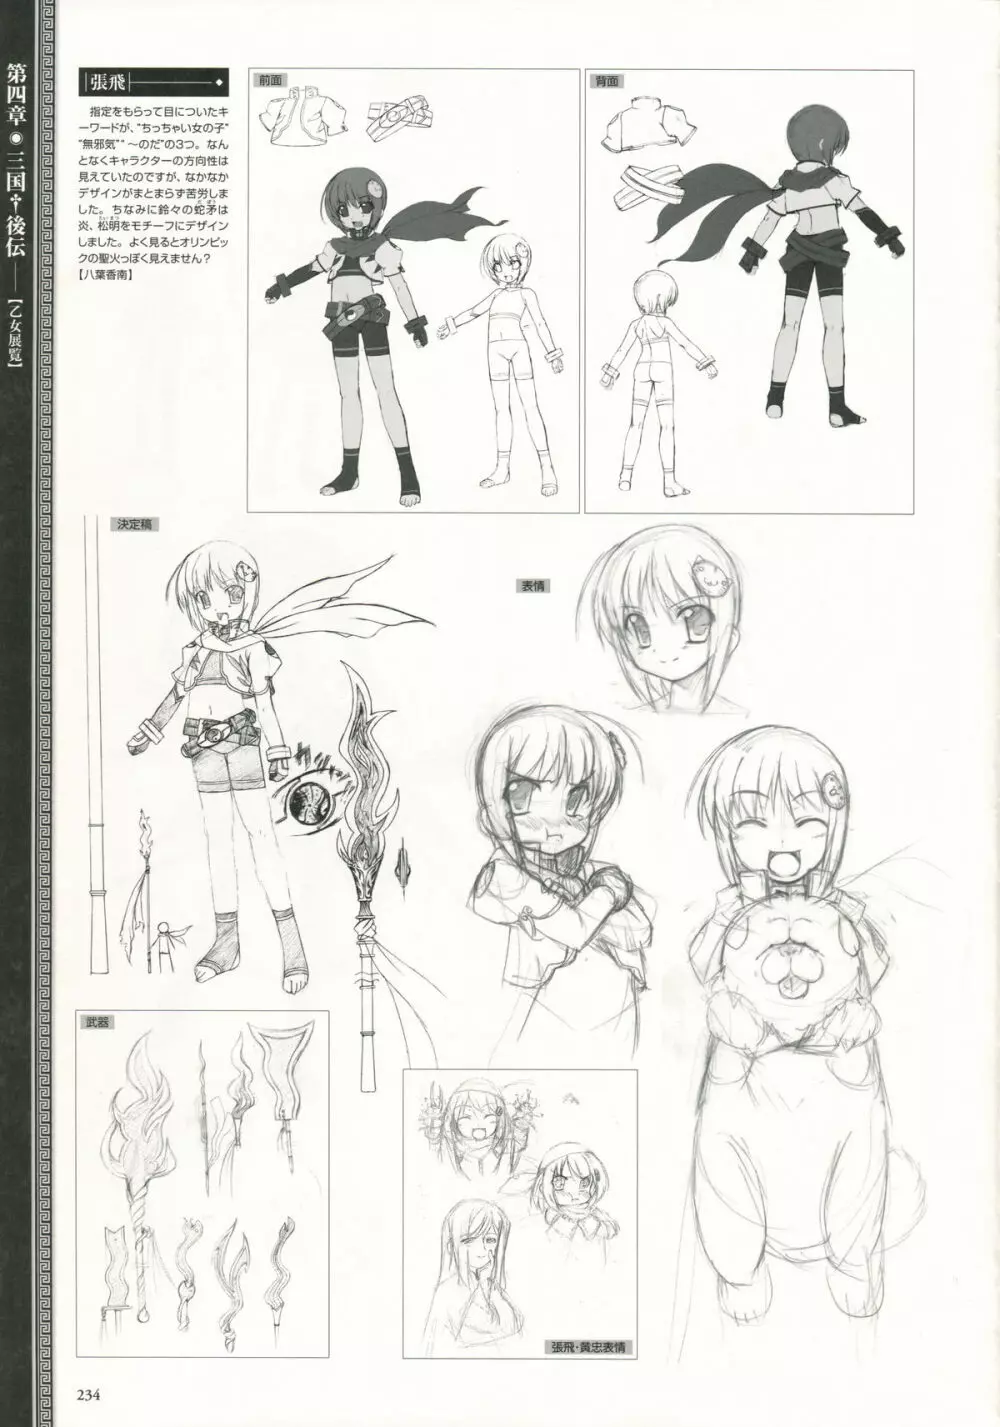 Shin-Koihime Musou Otome Ryouran Sangokushi Engi Perfect Visual Book 220ページ